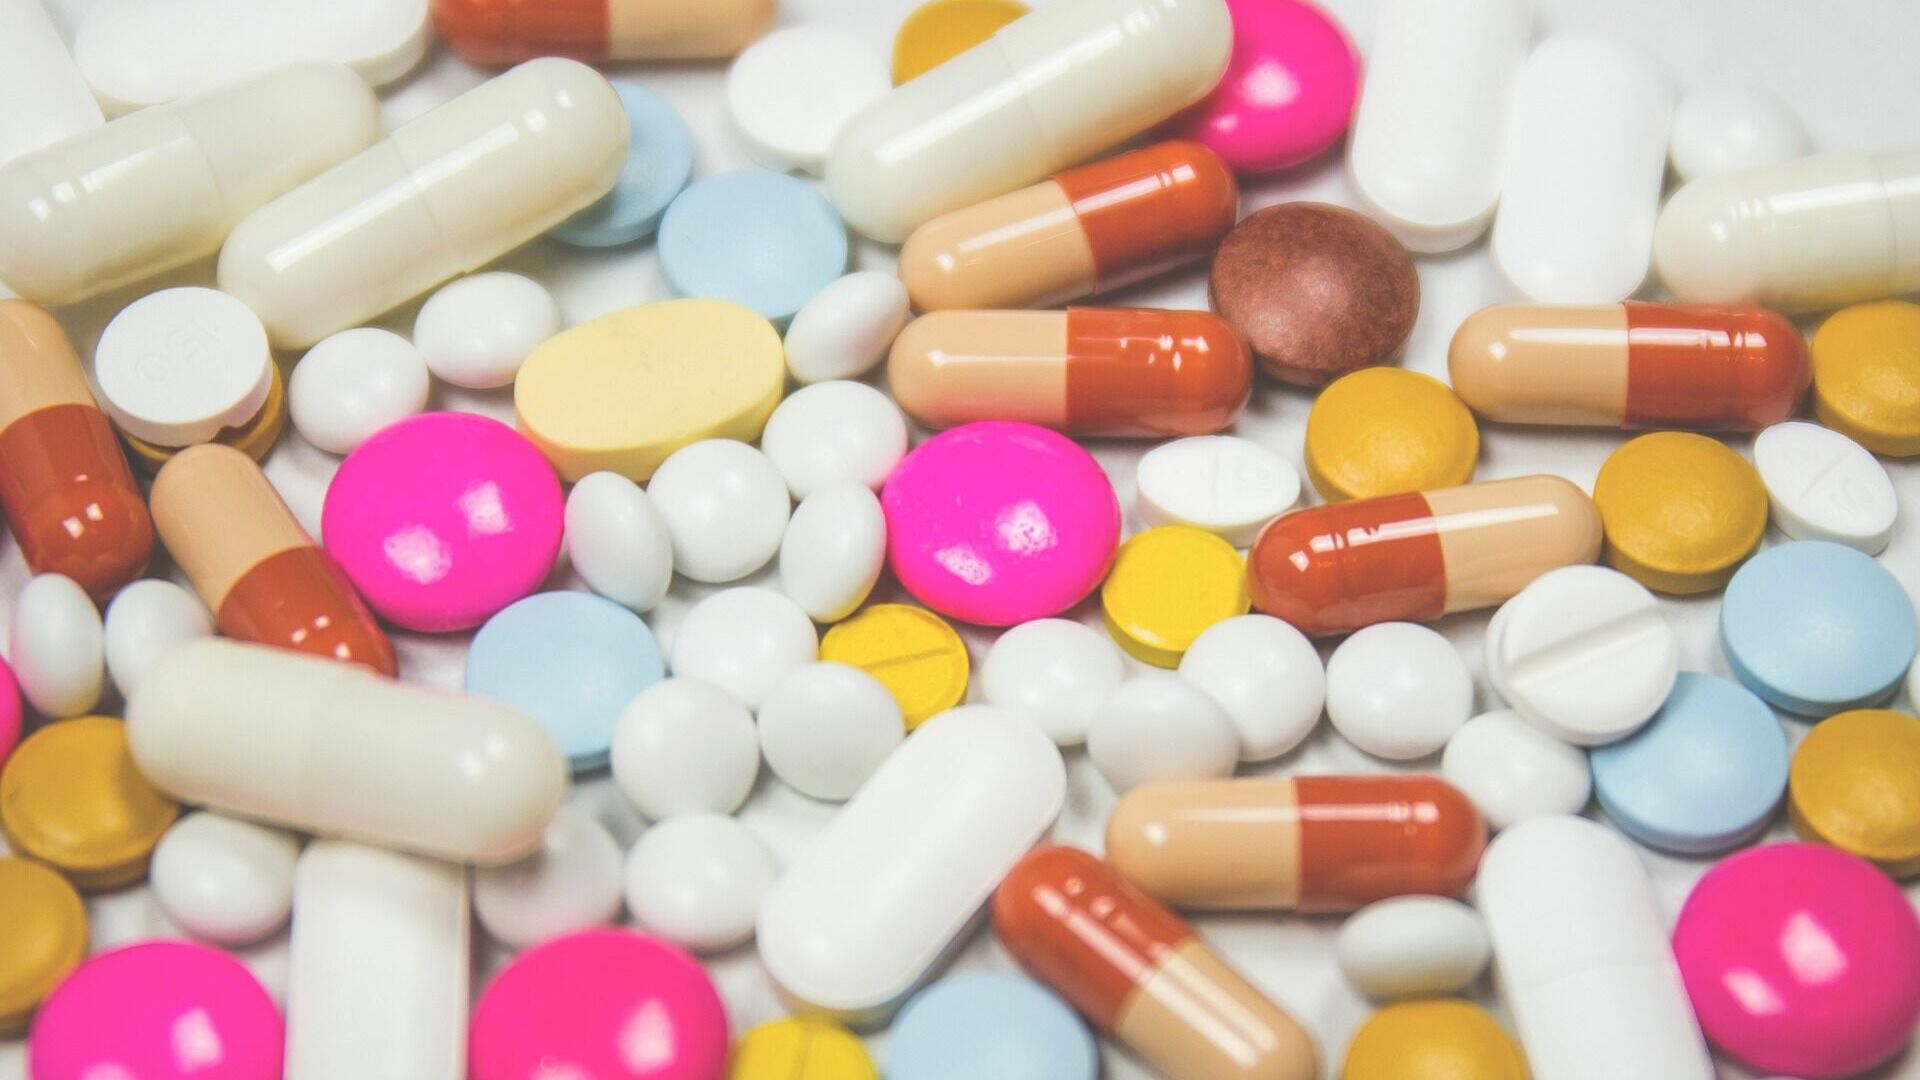 От «Кагоцела» до «Арбидола»: 10 популярных препаратов, на которые не стоит тратить деньги, даже если их выписал врач